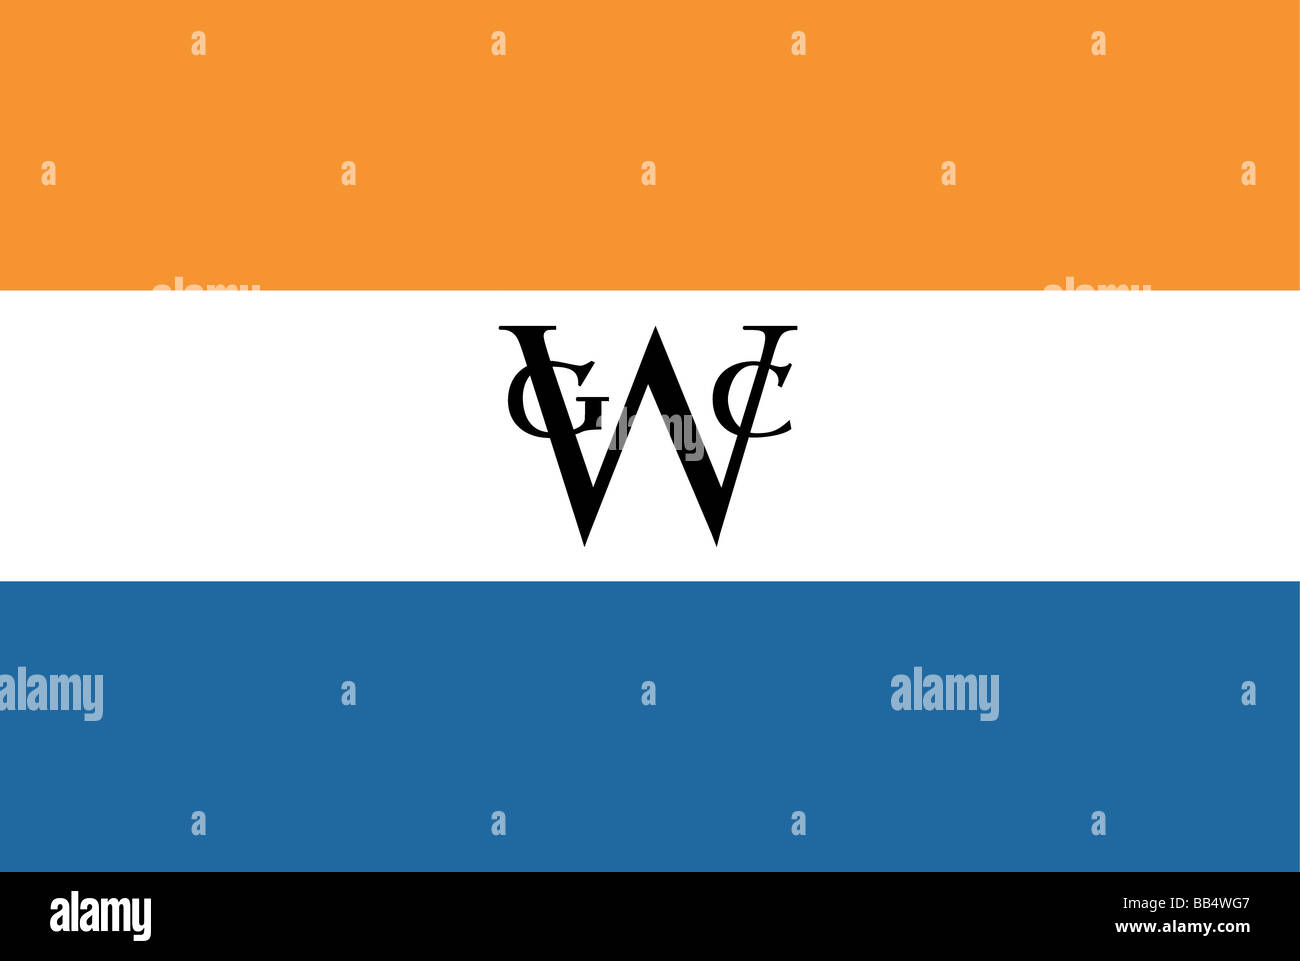 Bandera histórica de los Estados Unidos de América. Bandera de la Compañía Holandesa de las Indias Occidentales, que existió desde 1621 a 1794. Foto de stock